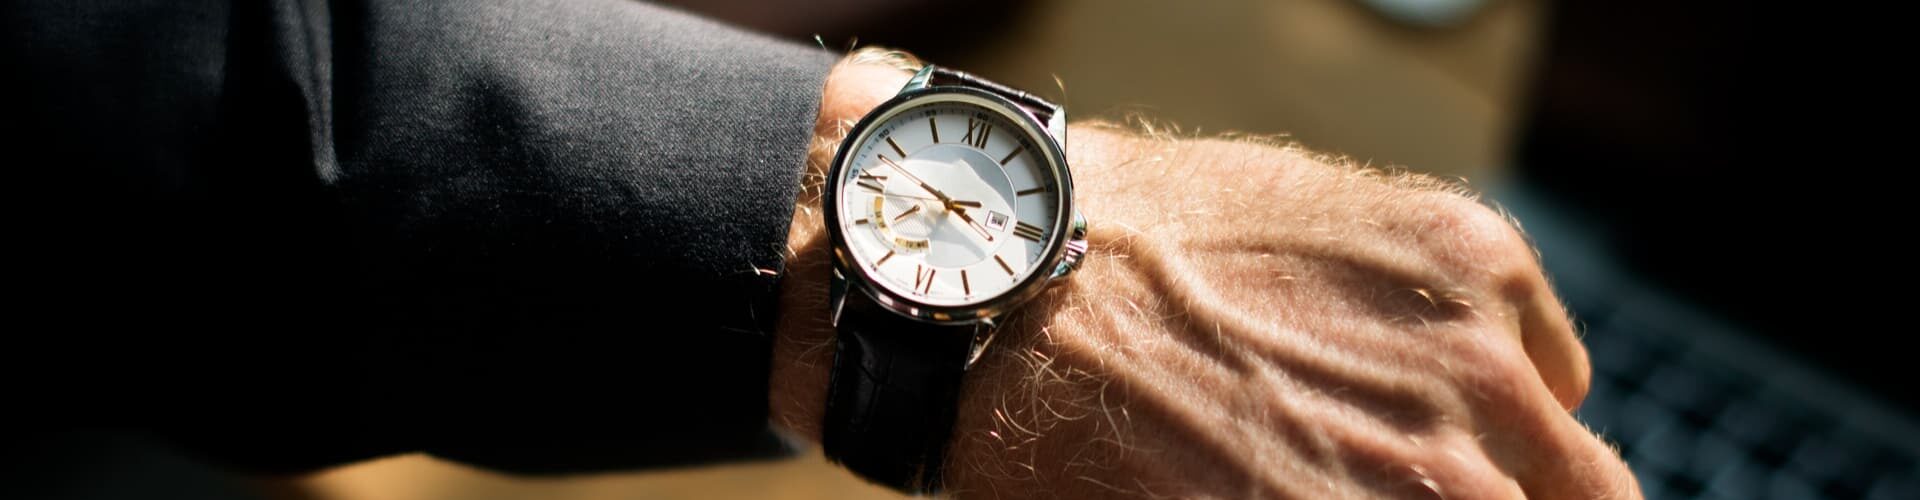 Quelle montre de luxe offrir selon les âges ?